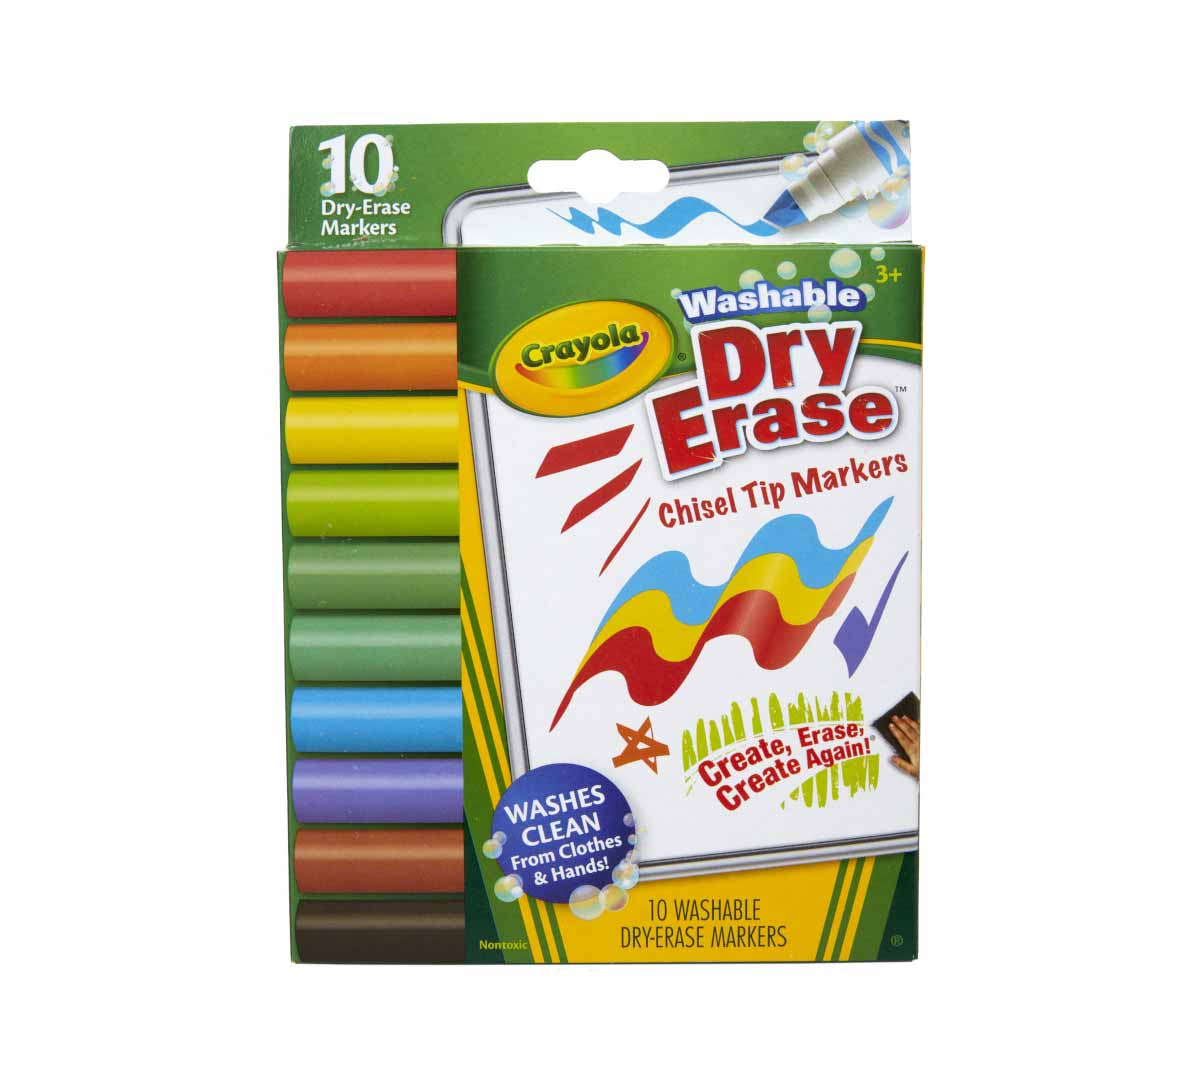 https://shop.crayola.com/on/demandware.static/-/Sites-crayola-storefront/default/dw0c5efbd0/images/58-7733-0-200_Washable-Dry-Erase-Markers_Chisel-Tip_10ct_1.jpg